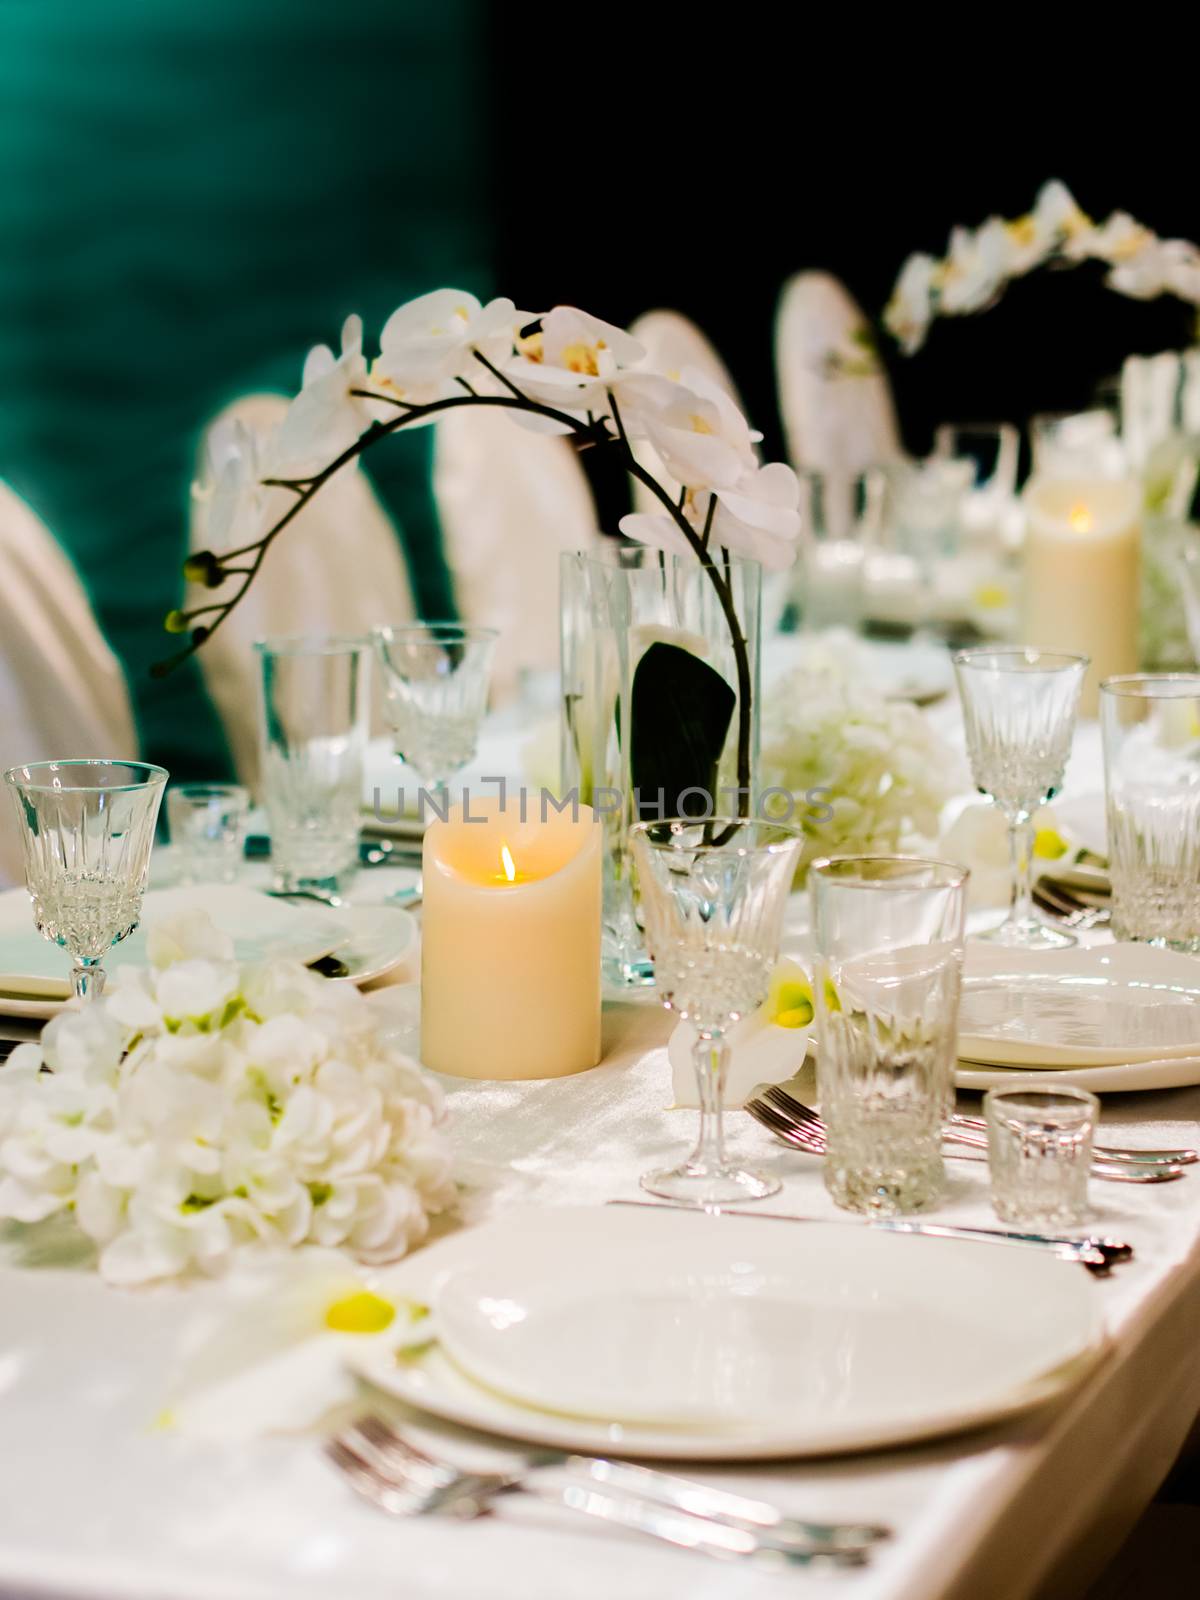 Beautiful table setting for wedding celebration. Shallow DOF